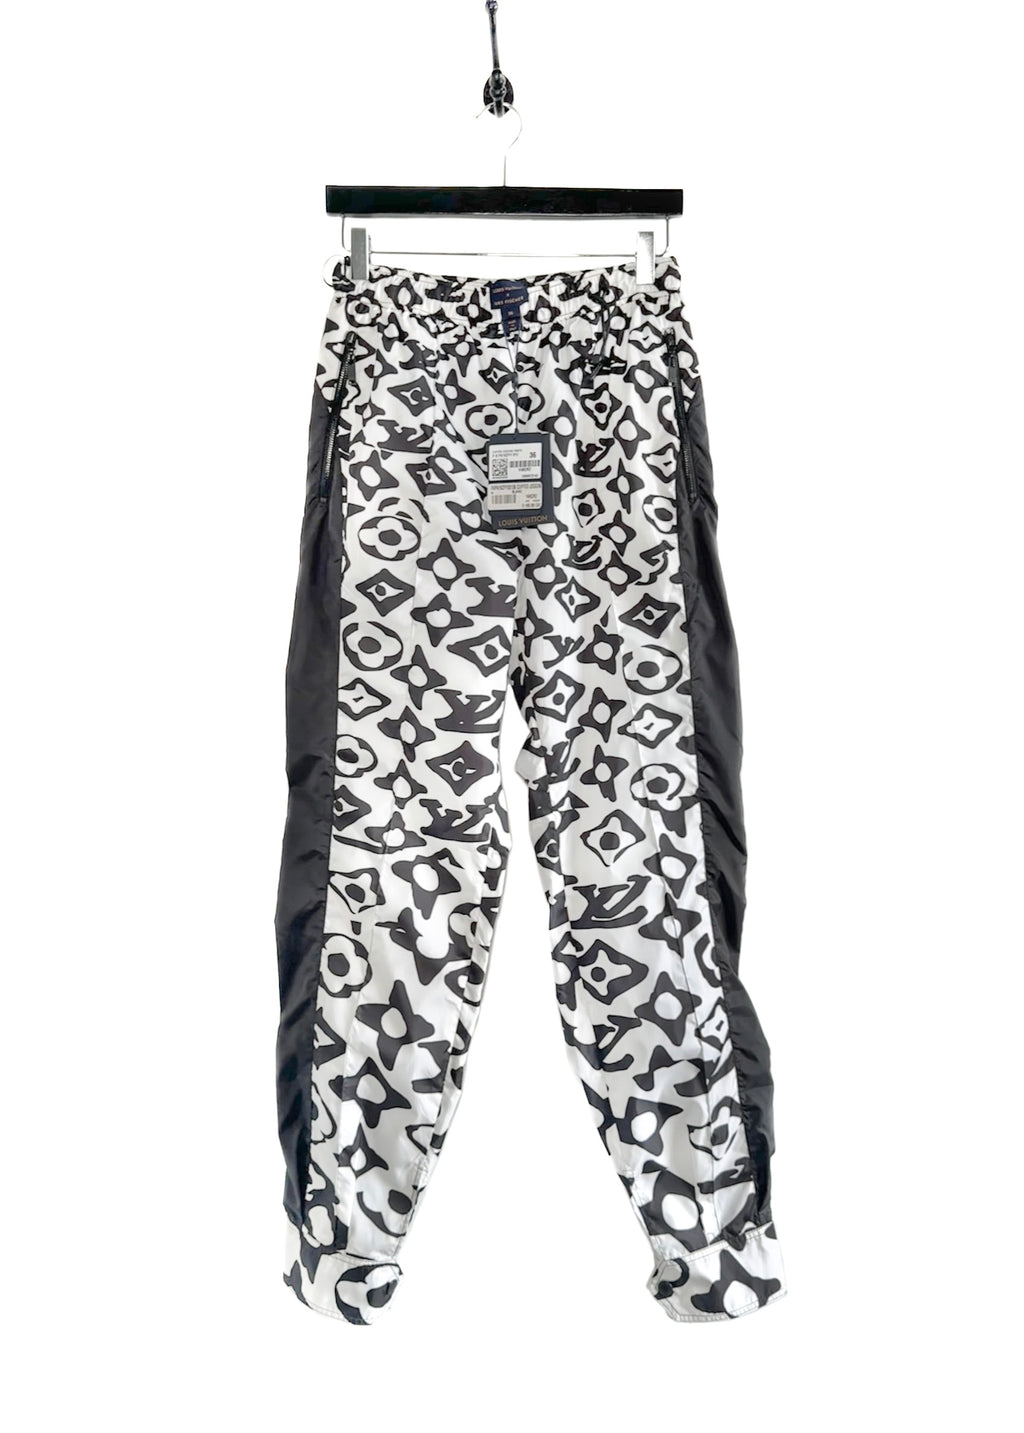 Pantalon de jogging à revers imprimé Louis Vuitton x URS FISCHER 2021 noir blanc